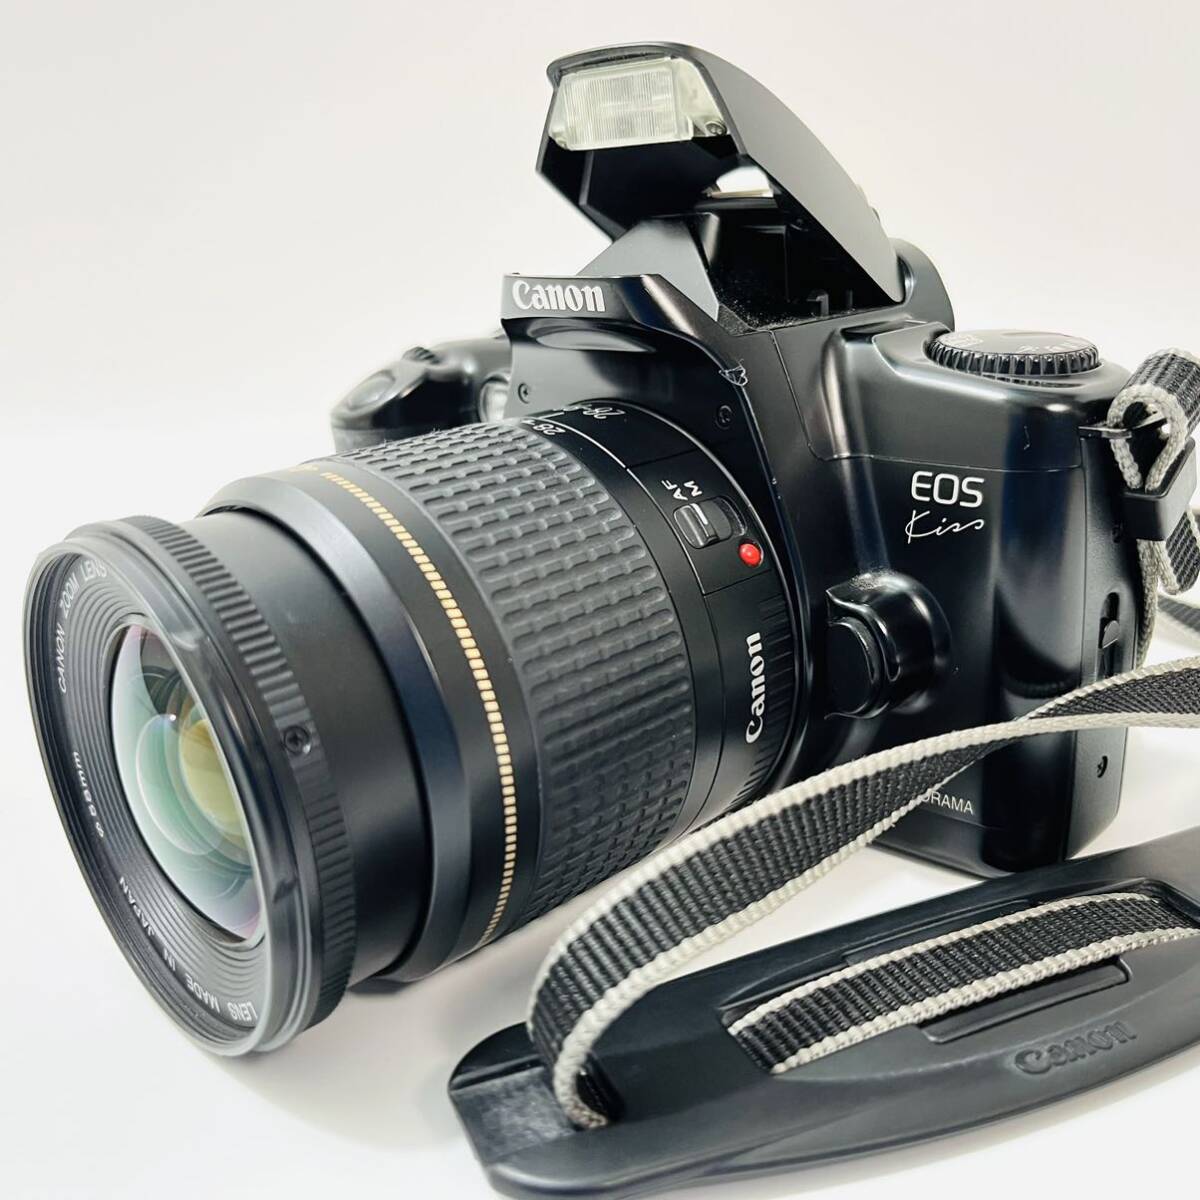 Canonフィルムカメラ EOS Kiss イオス キス キャノン レンズ ULTRASONIC 0.38m/1.3ft AF 28-80mmの画像1